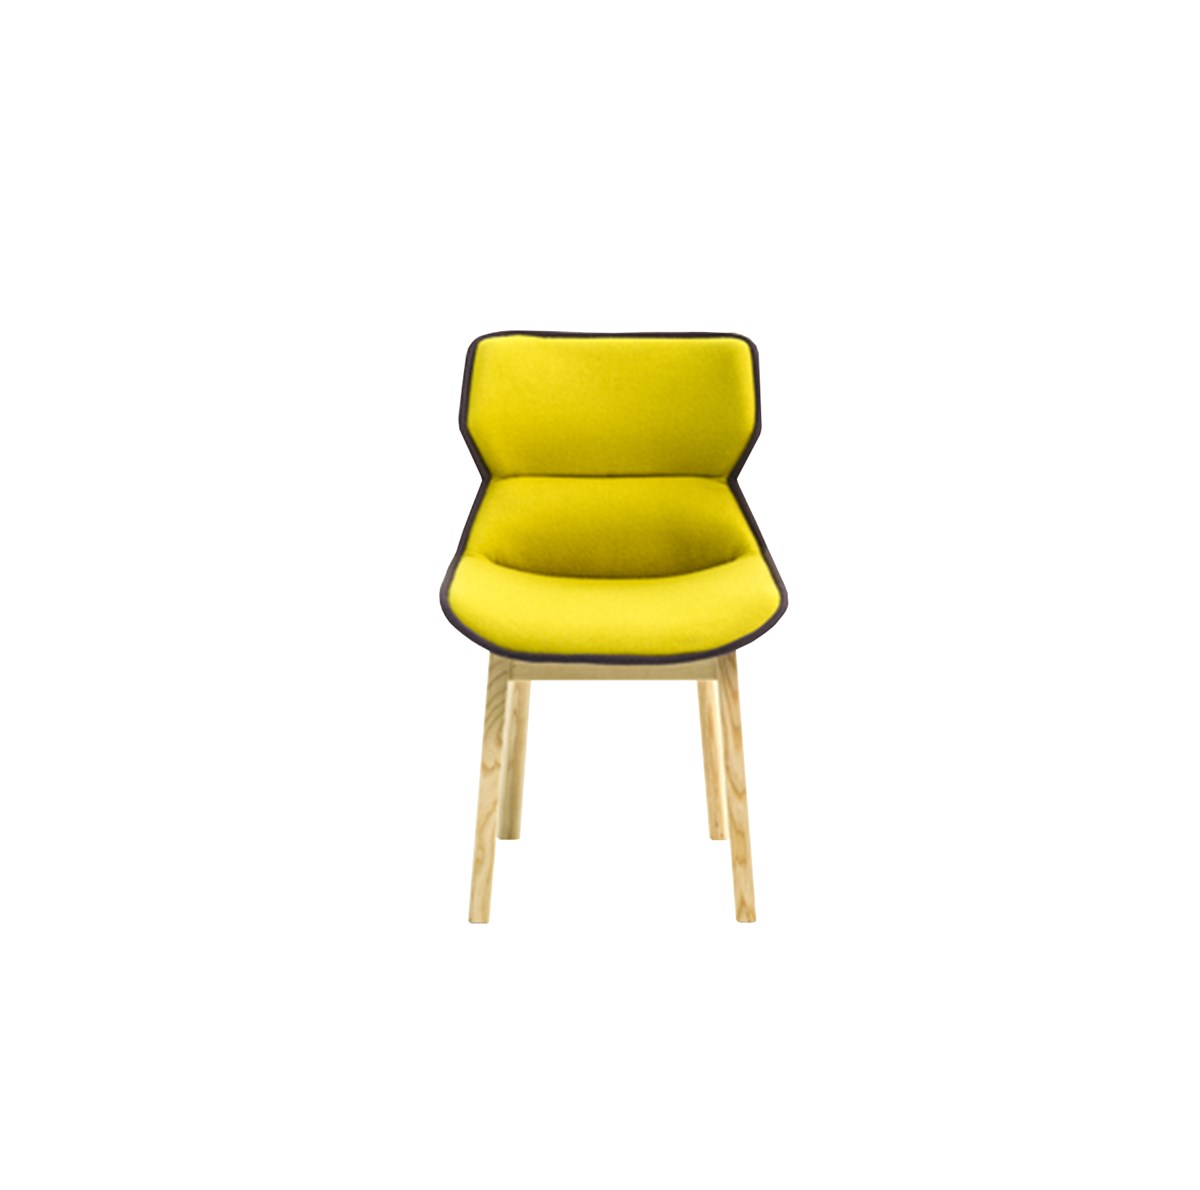 Moroso-Patricia-Urquiola-Clarissa-Chair-Matisse-1